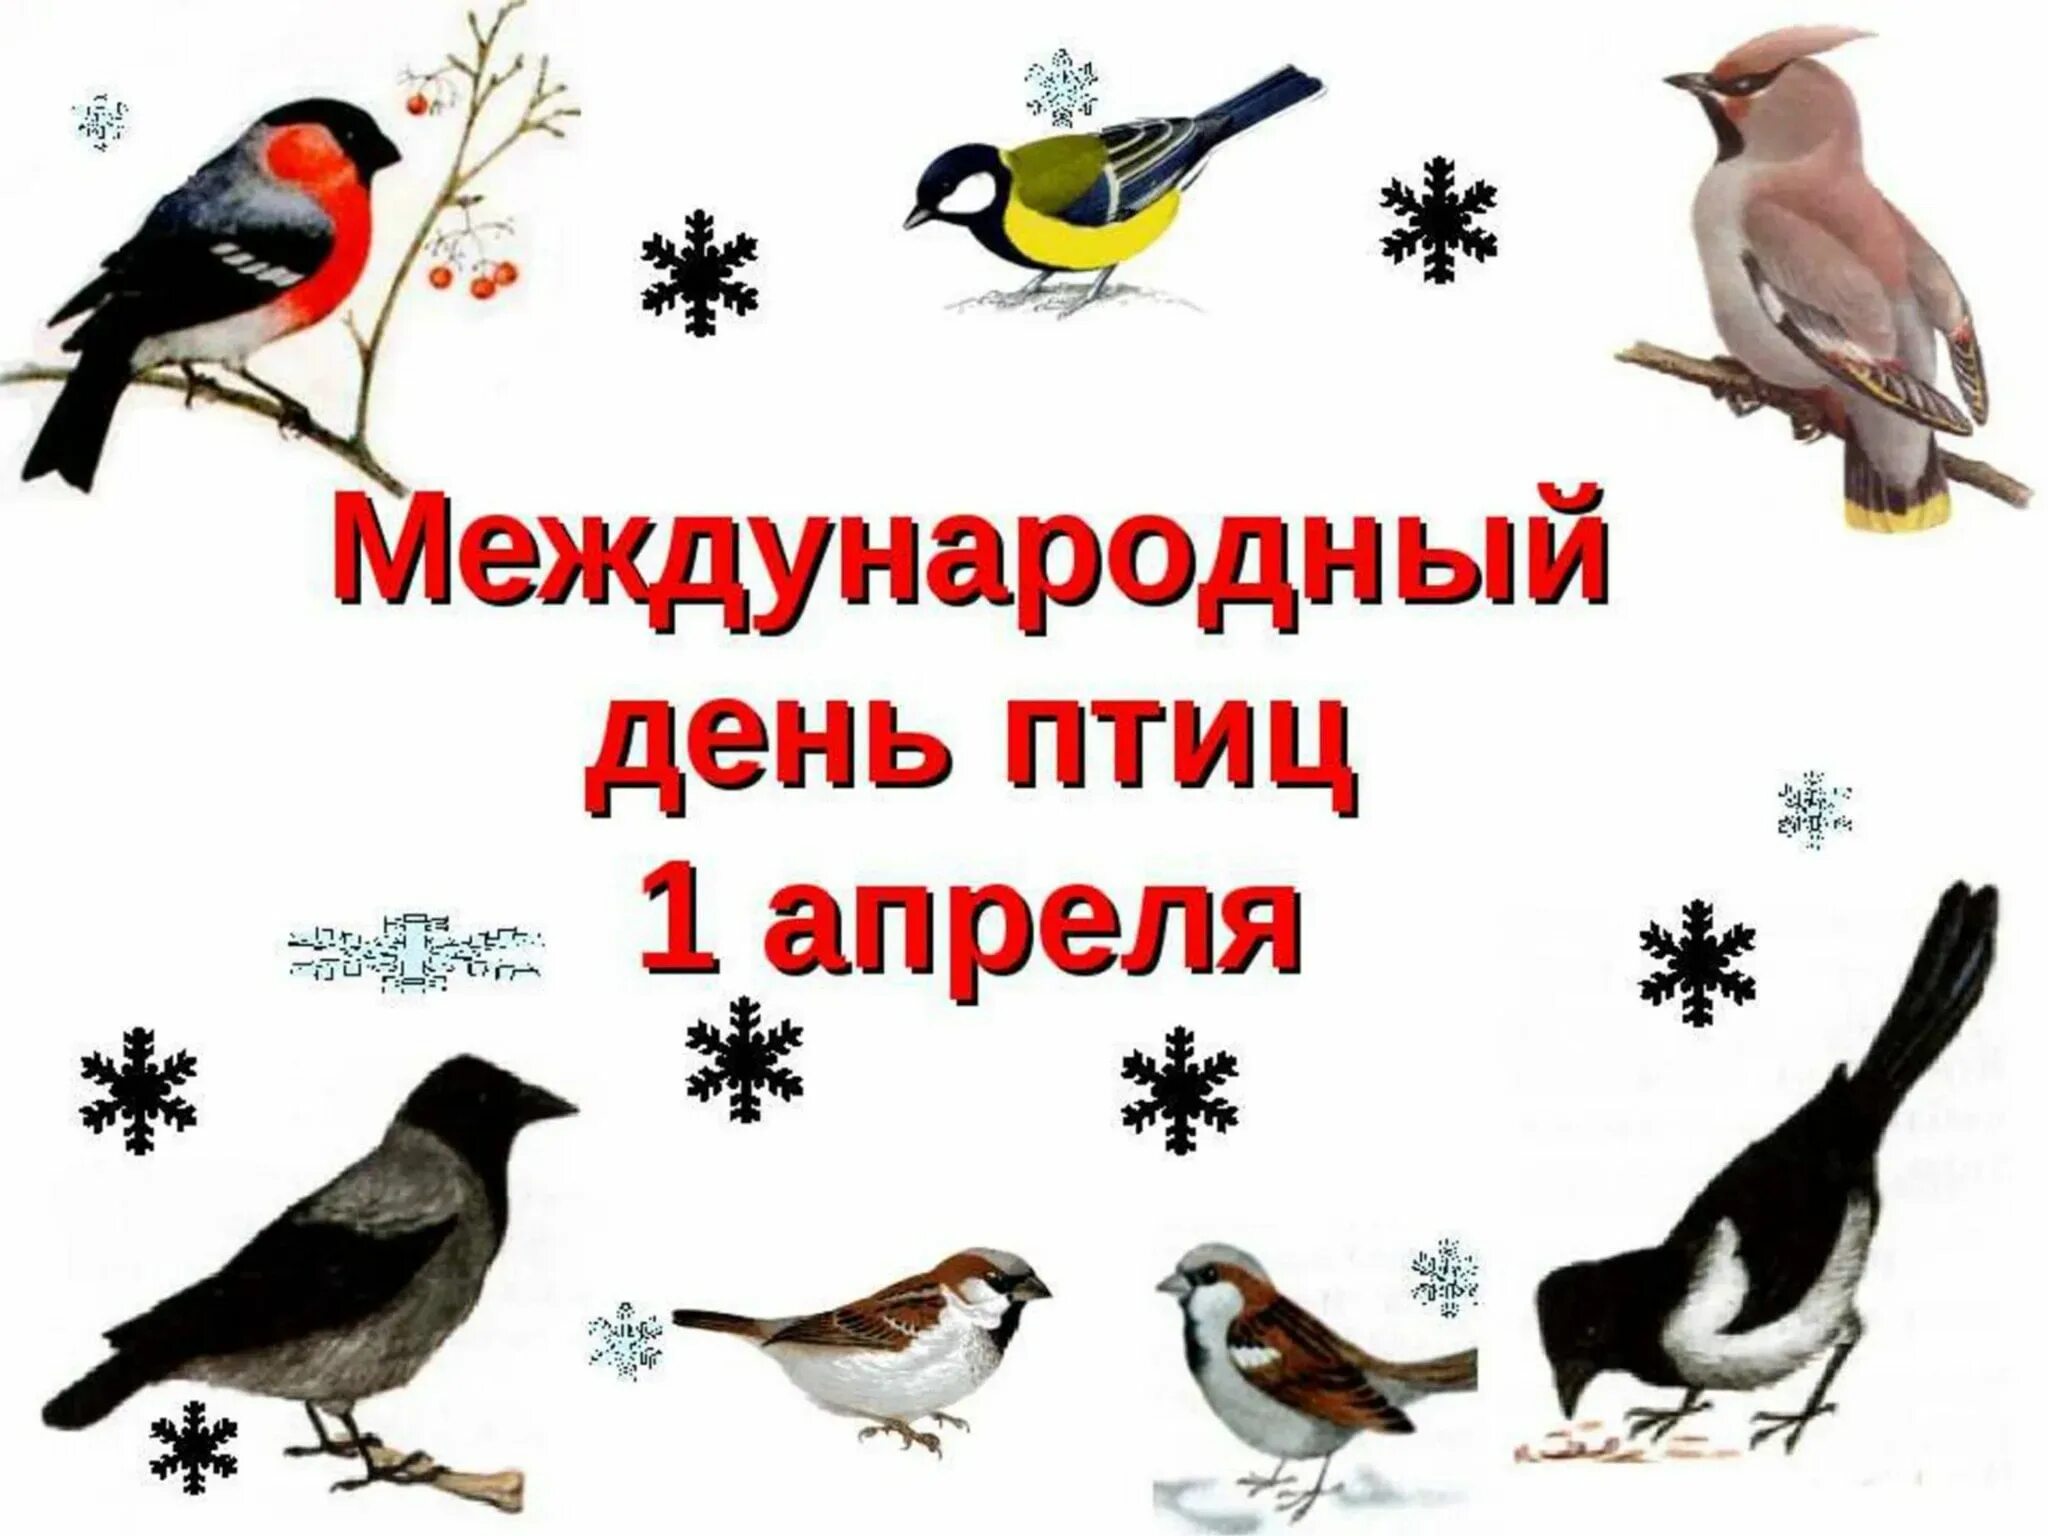 День птиц 1 апреля в библиотеке. Международный день птиц. 1 Апреля Международный день птиц. Междунаровныйденьптиц. Денптицу.